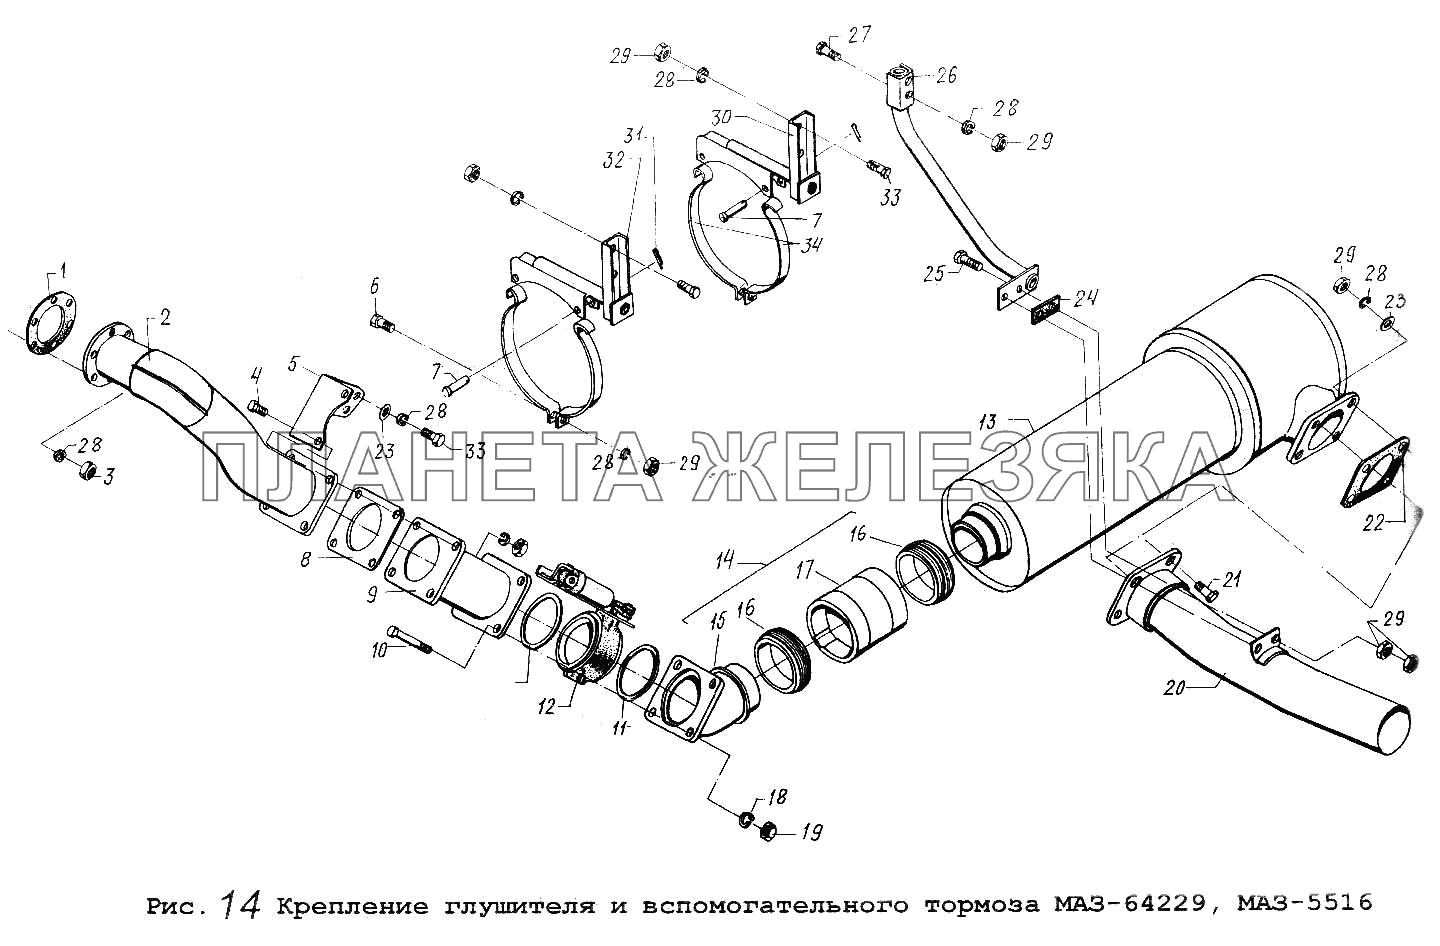 Крепление глушителя и вспомогательного тормоза МАЗ-64229, МАЗ-5516 Общий (см. мод-ции)